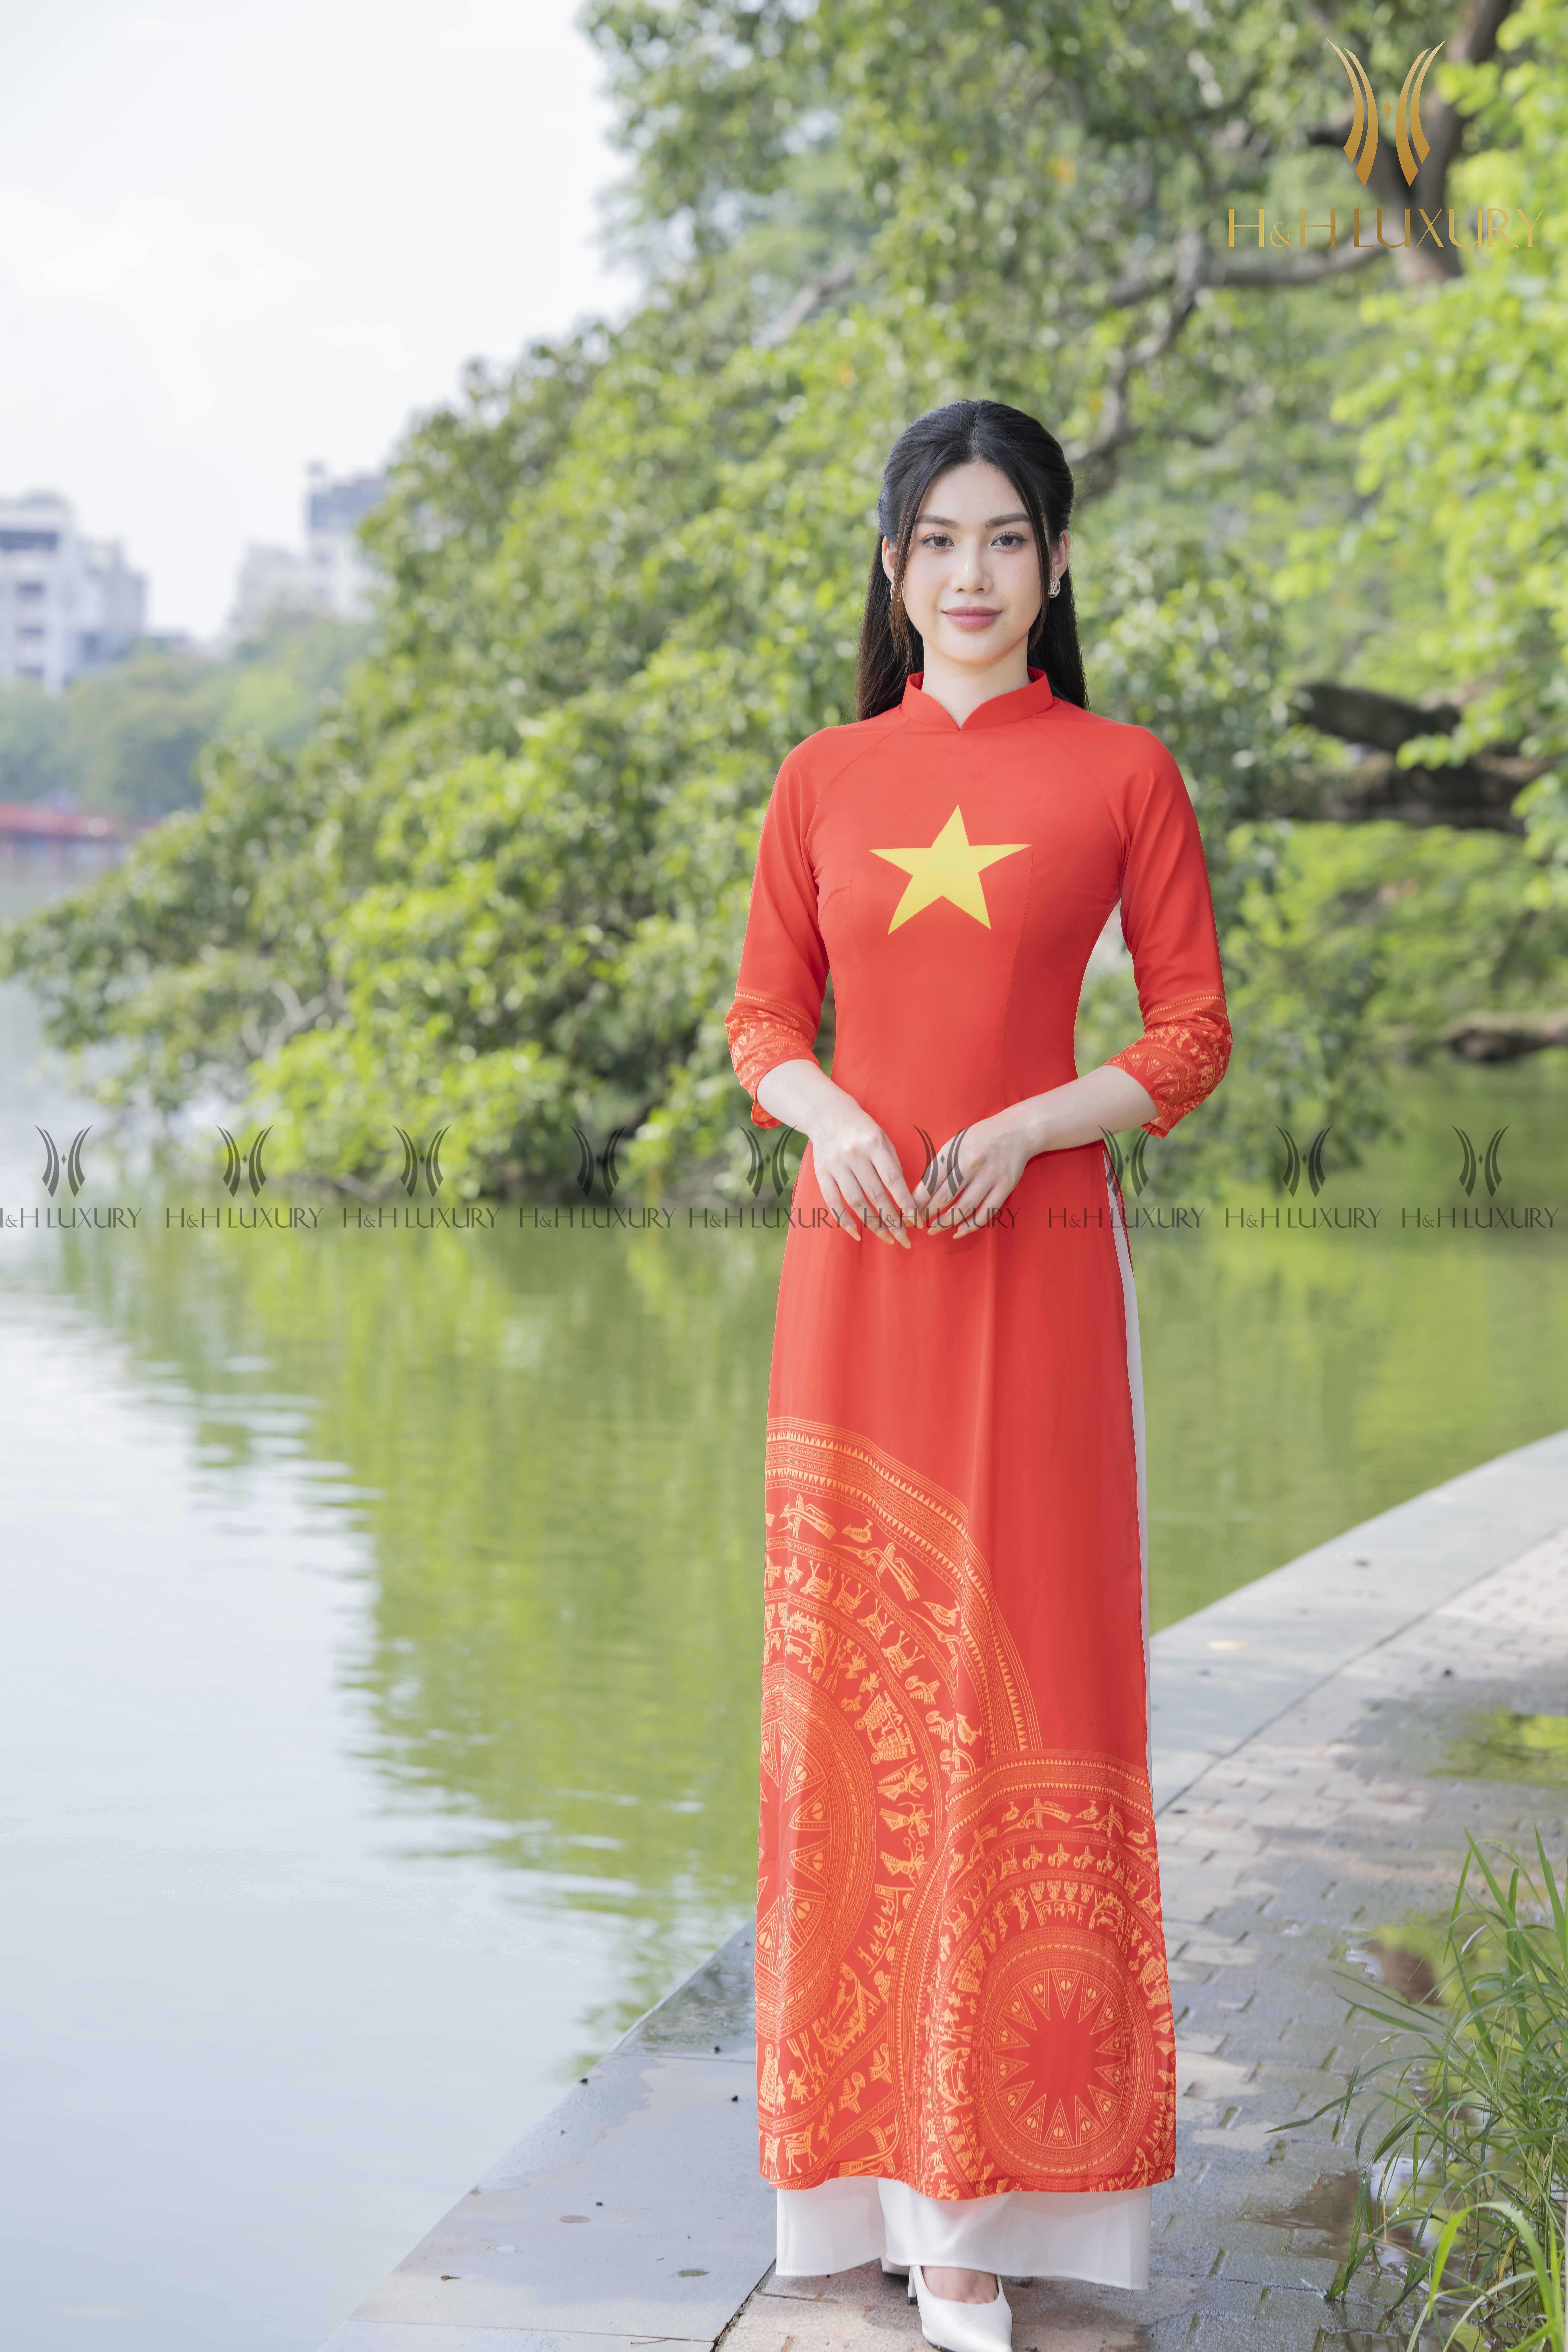 Áo dài đỏ Việt Nam